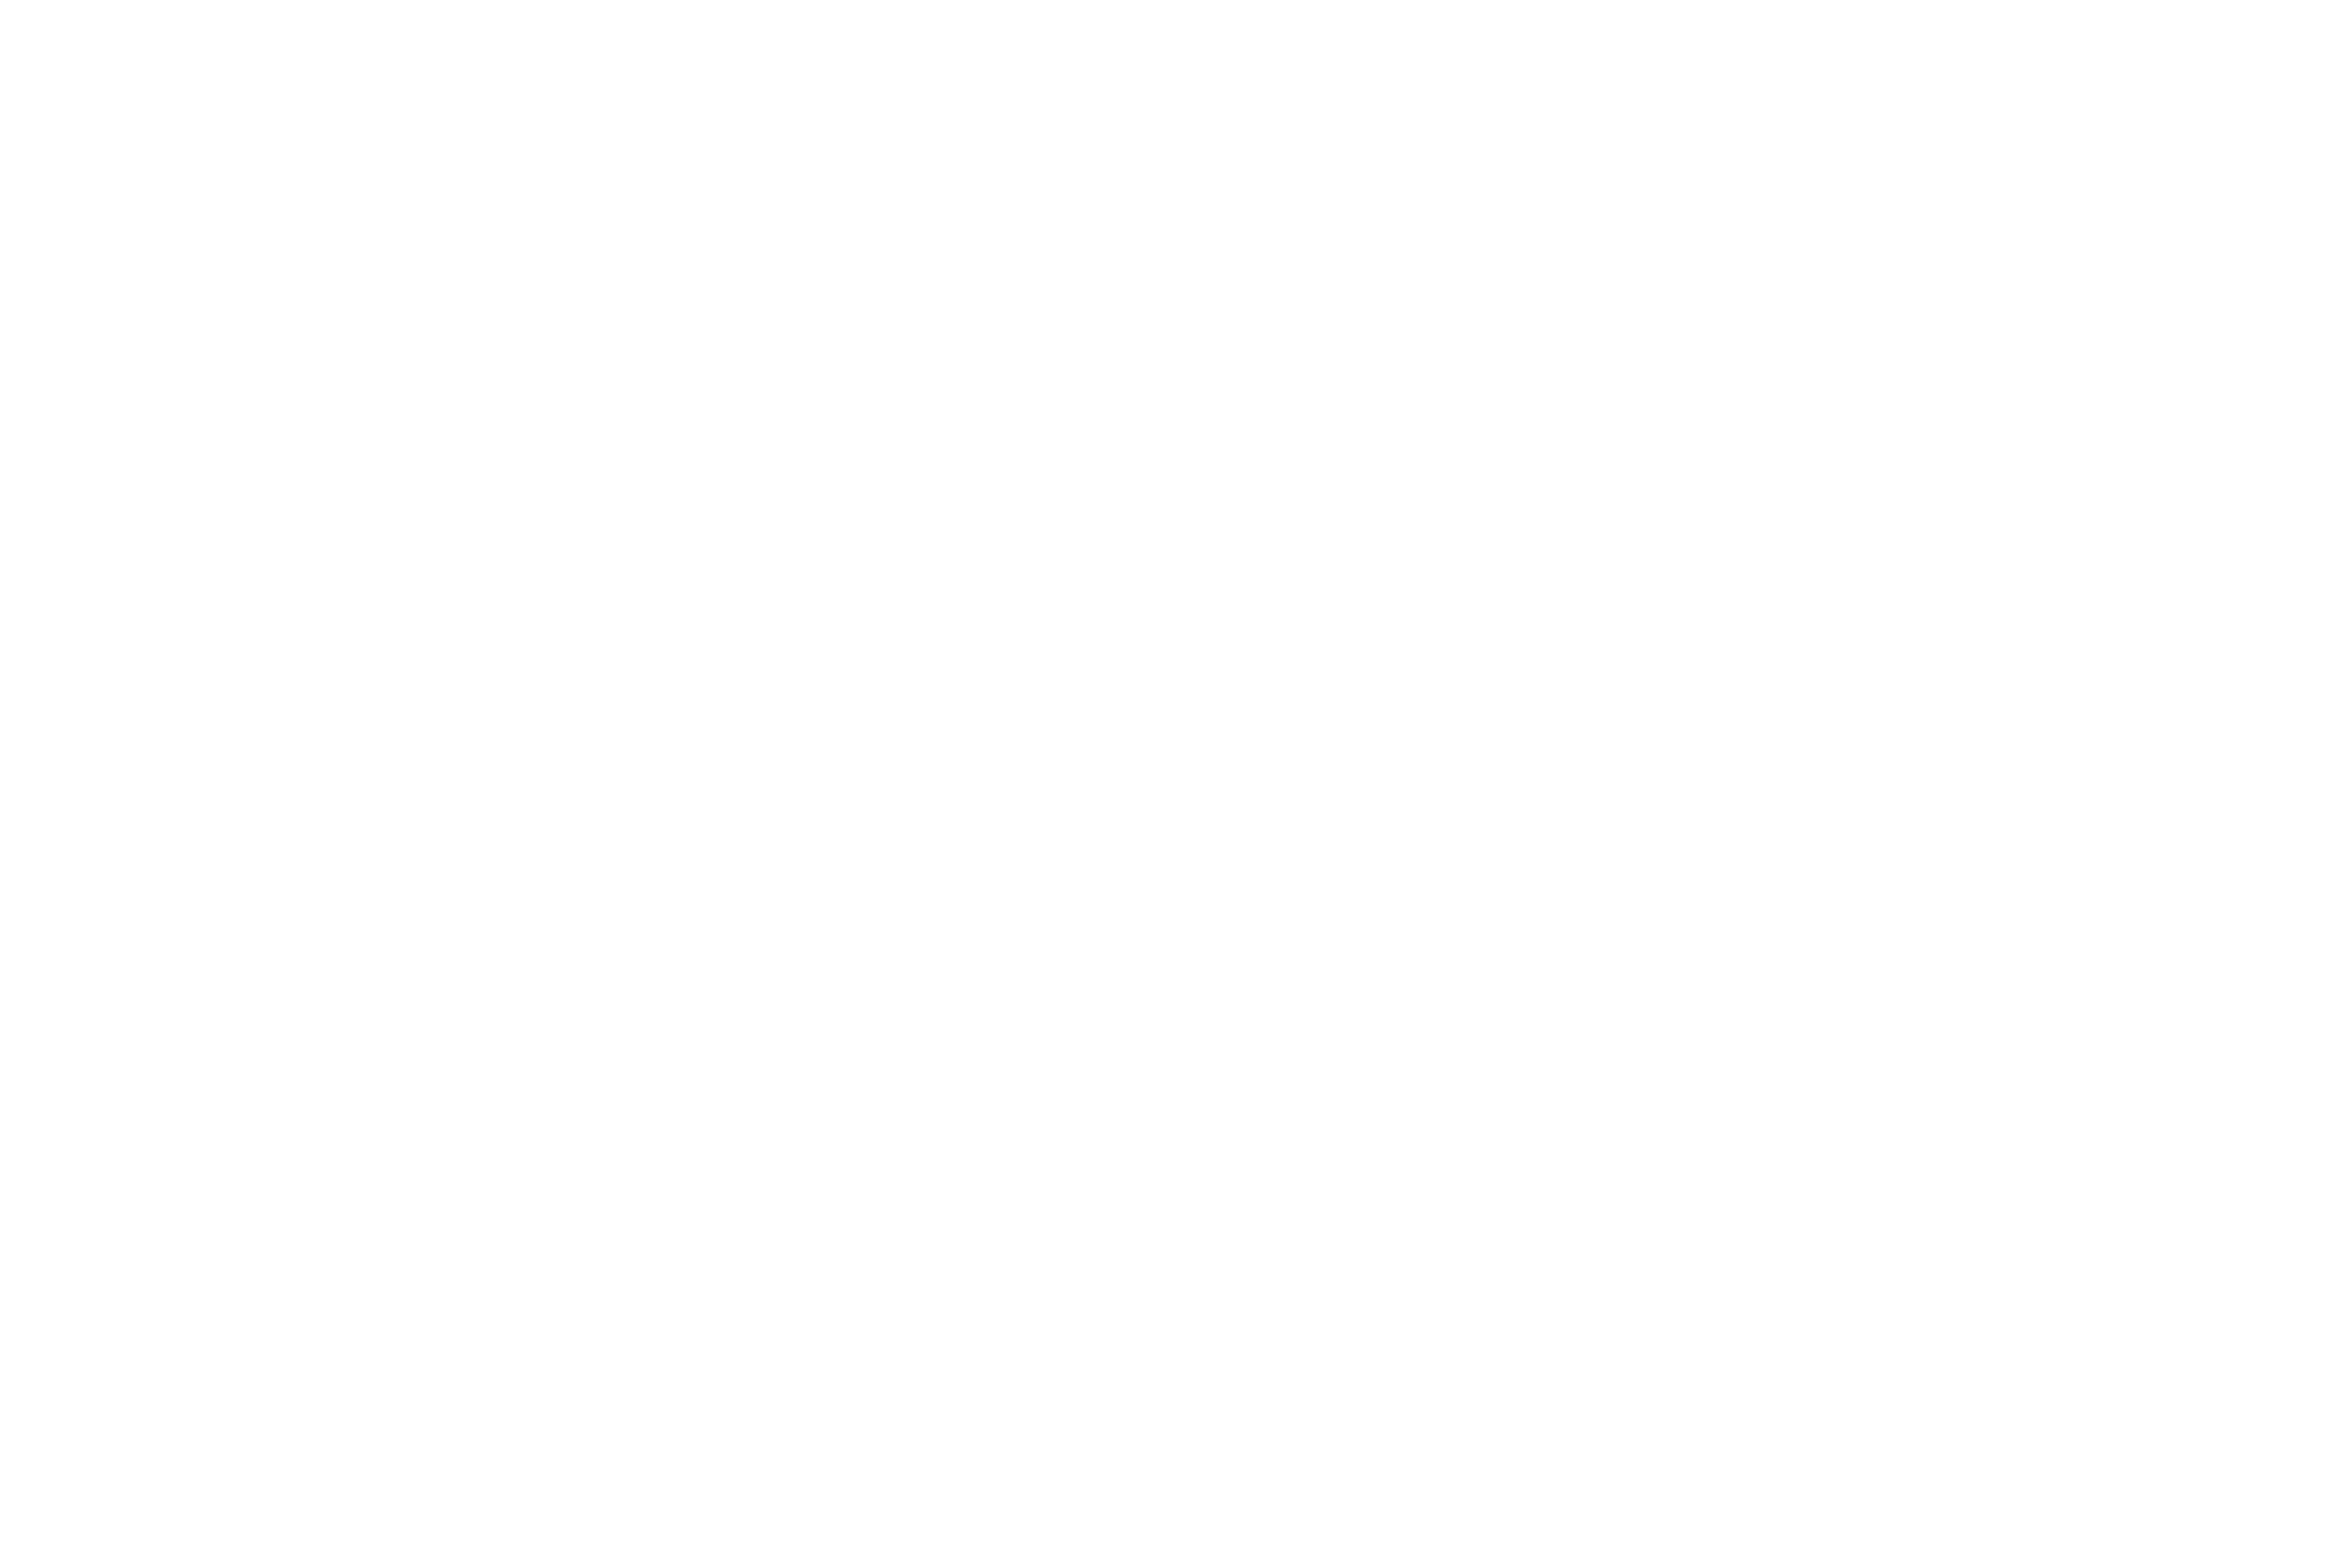 fotografobologna.com